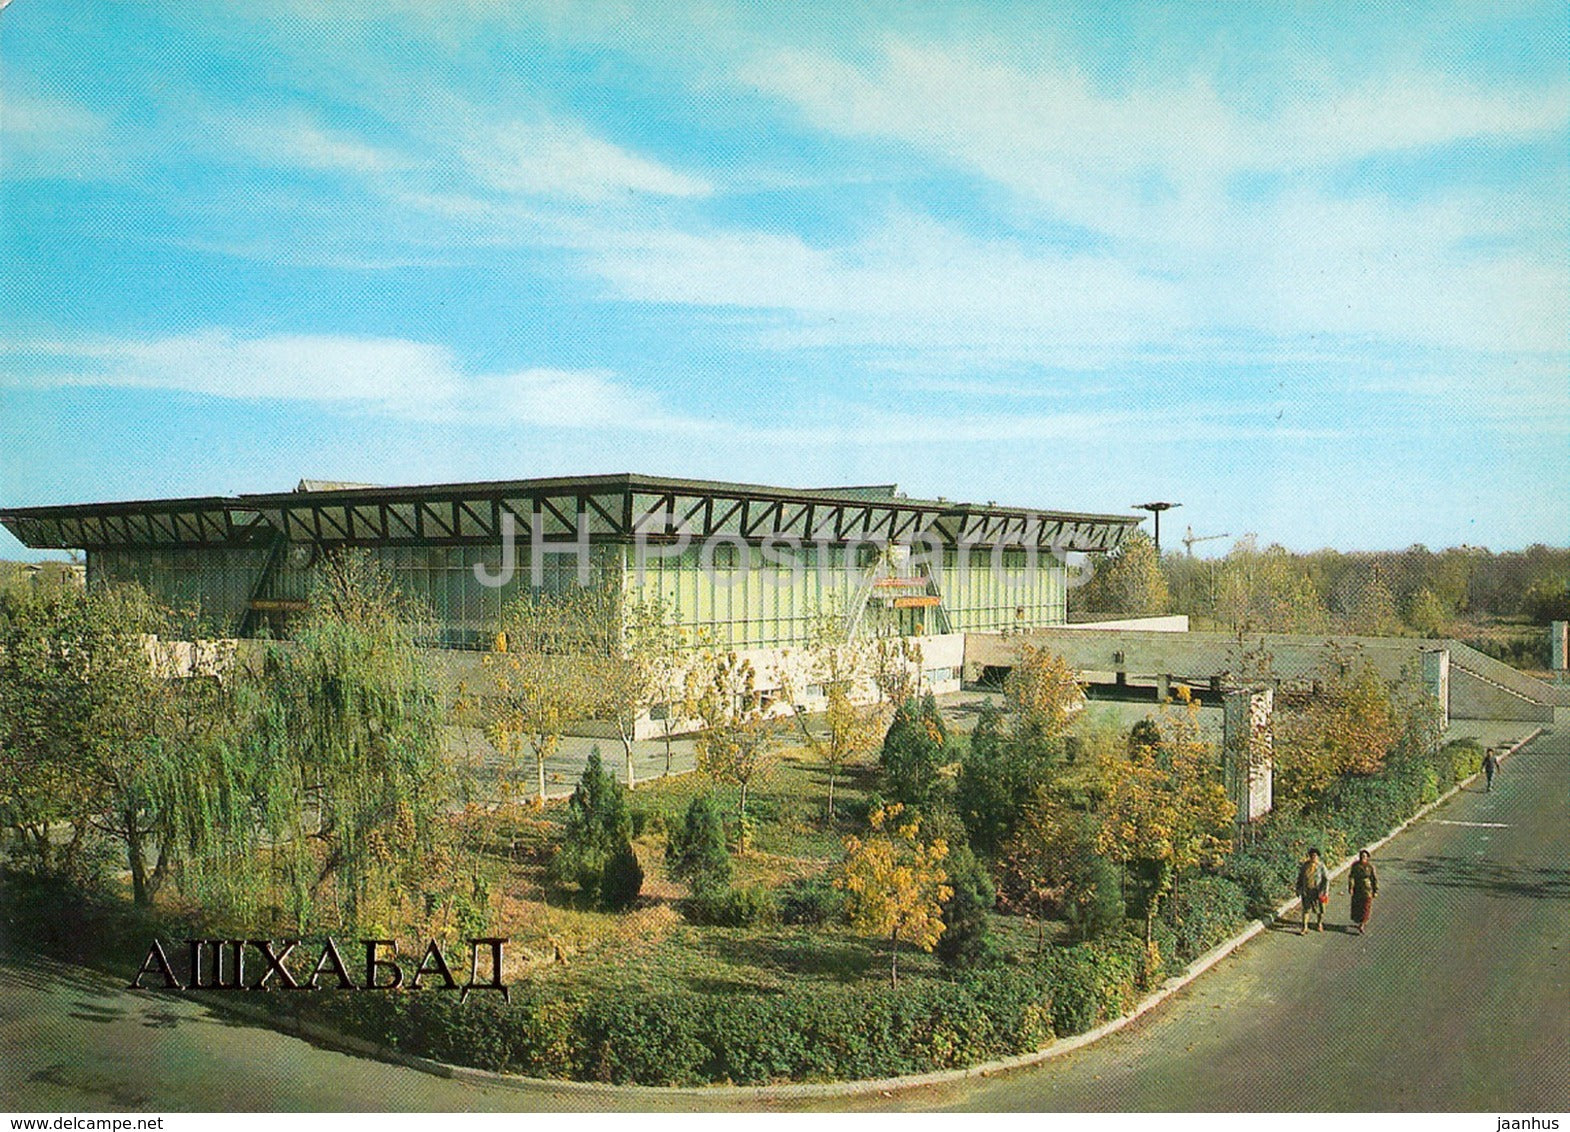 Ashgabat - Ashkhabad - Exhibition of Economic Achievments of the Turkmen Republic - 1984 - Turkmenistan - unused - JH Postcards